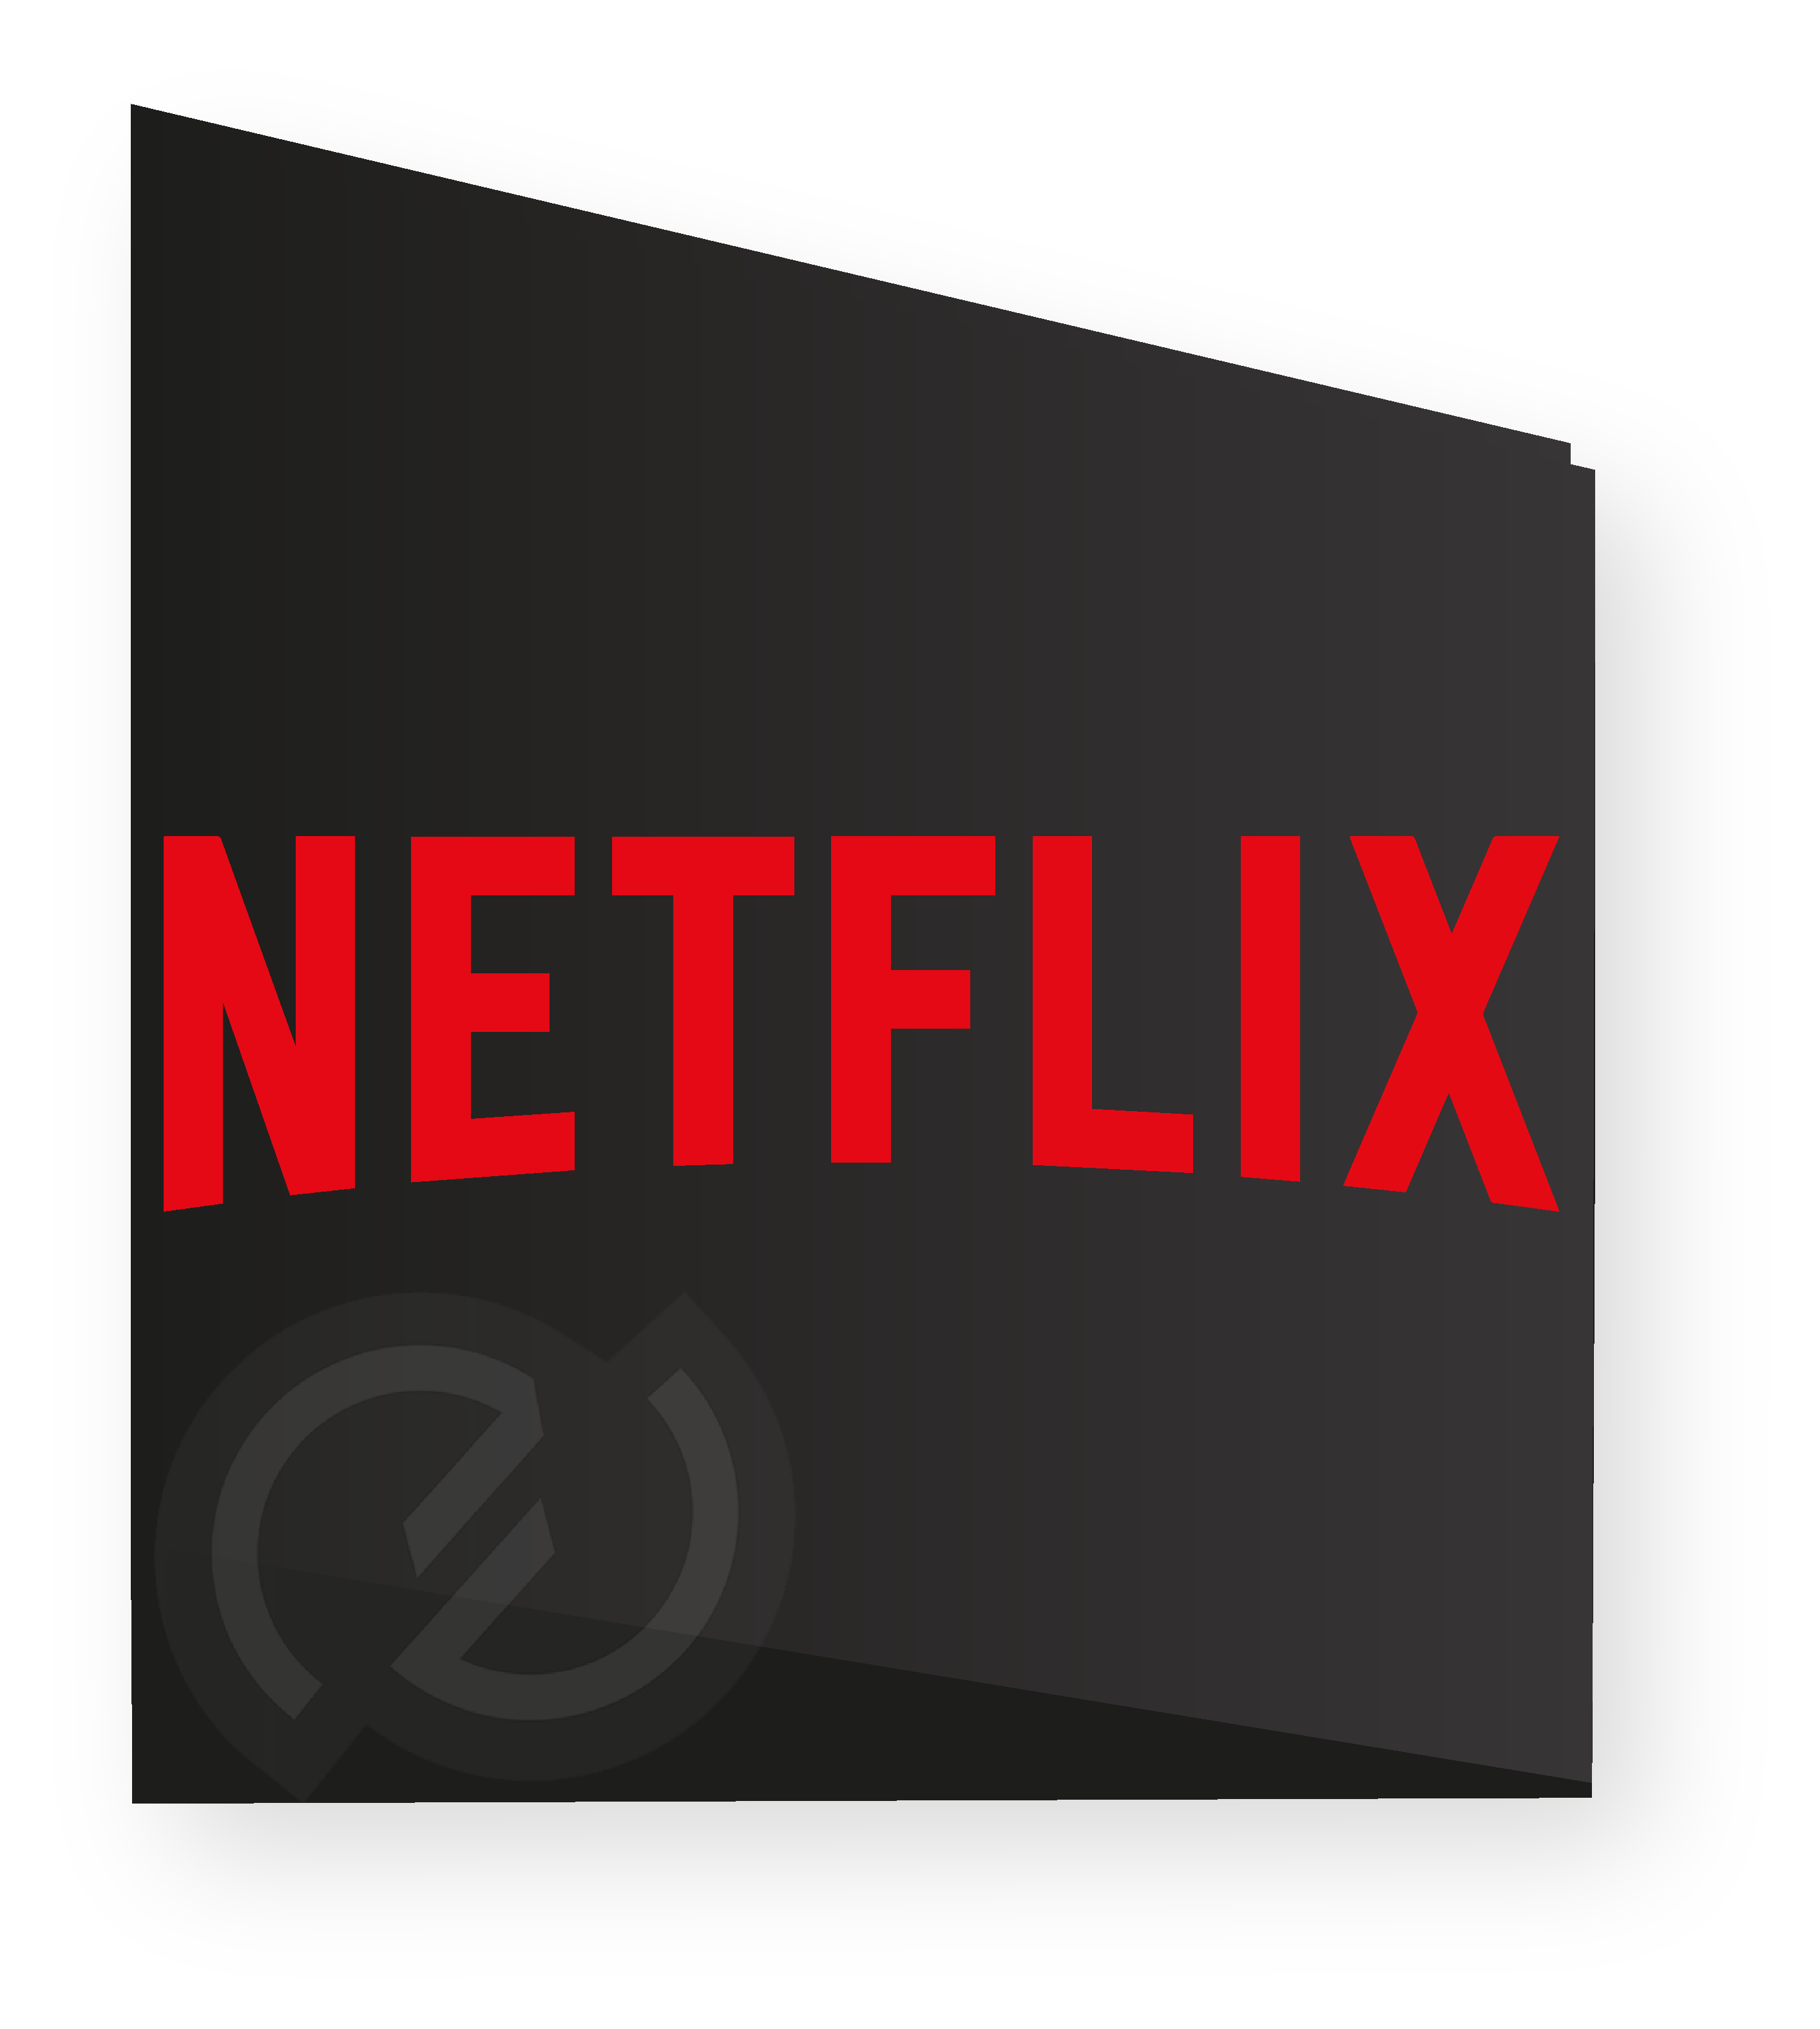 Image logo Netflix